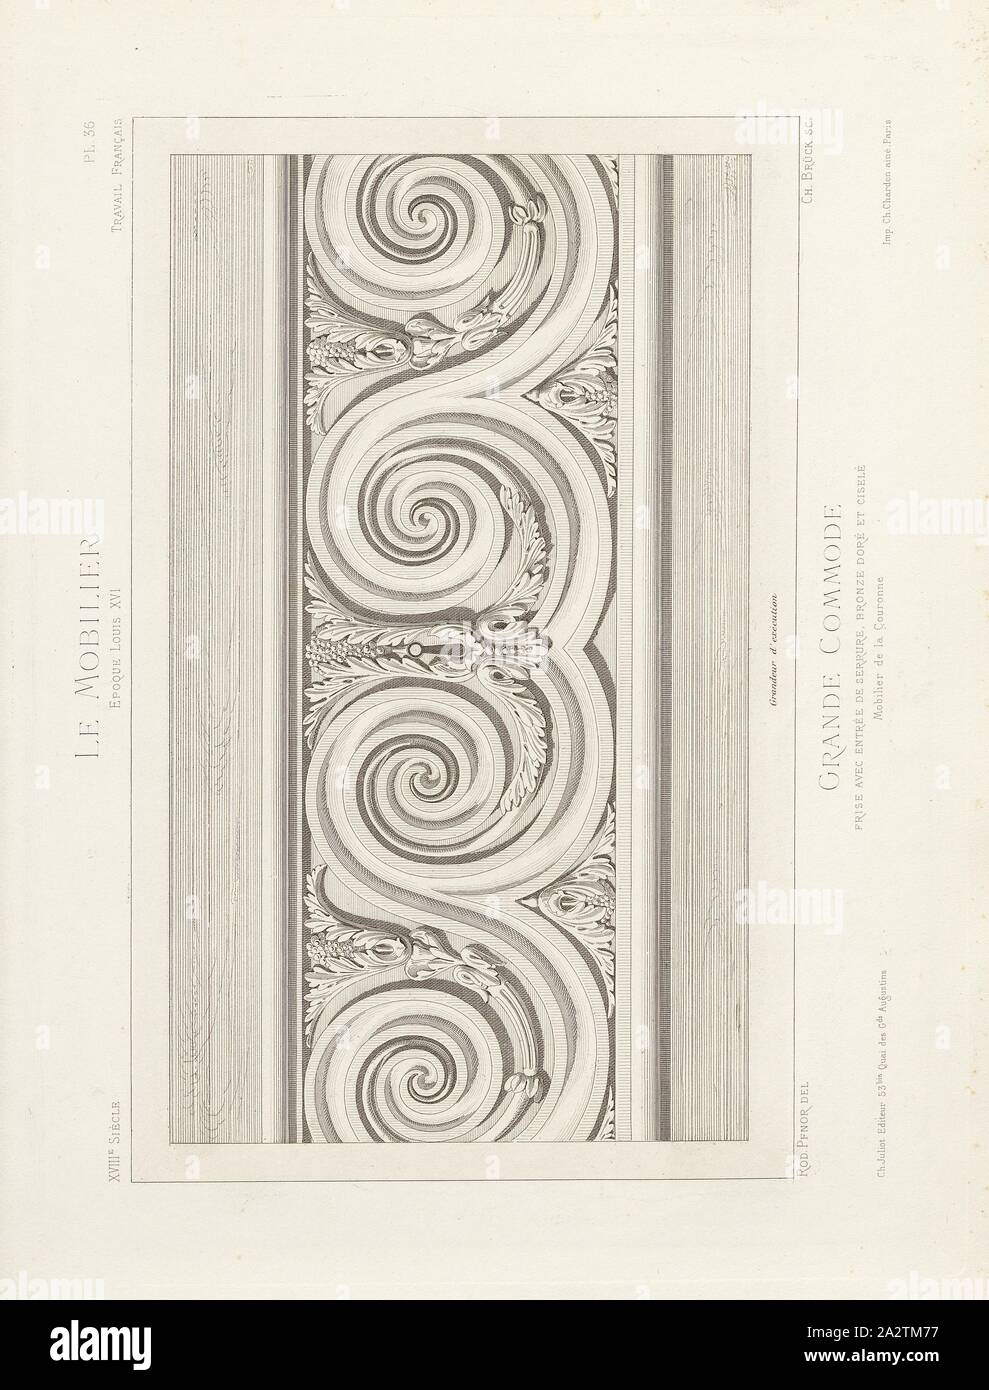 Large frieze dresser with lock entry, gilded and chiseled bronze. Crown Furnishings, 18th century chest of drawers (Louis XVI style), Signed: Rod., Pfnor del, Ch. Brück sc, Ch. Juliot Editeur; Ch. Ch. Chardon, Pl. 36, p. 8, Pfnor, Rodolphe (del.); Brück, Ch. (sc.); Juliot, Ch. (ed.I; Chardon, Ch. (imp.), Rodolphe Pfnor: Le mobilier de la couronne et des grandes collections publiques et particulières du XIIIe siècle au XIXe siècle: mobilier civil. Mobilier religieux. Meubles, tentures, tapisseries, bronzes et objets d'art de toutes les époques accompagnés de dessins, grandeur d'exécution. Paris Stock Photo